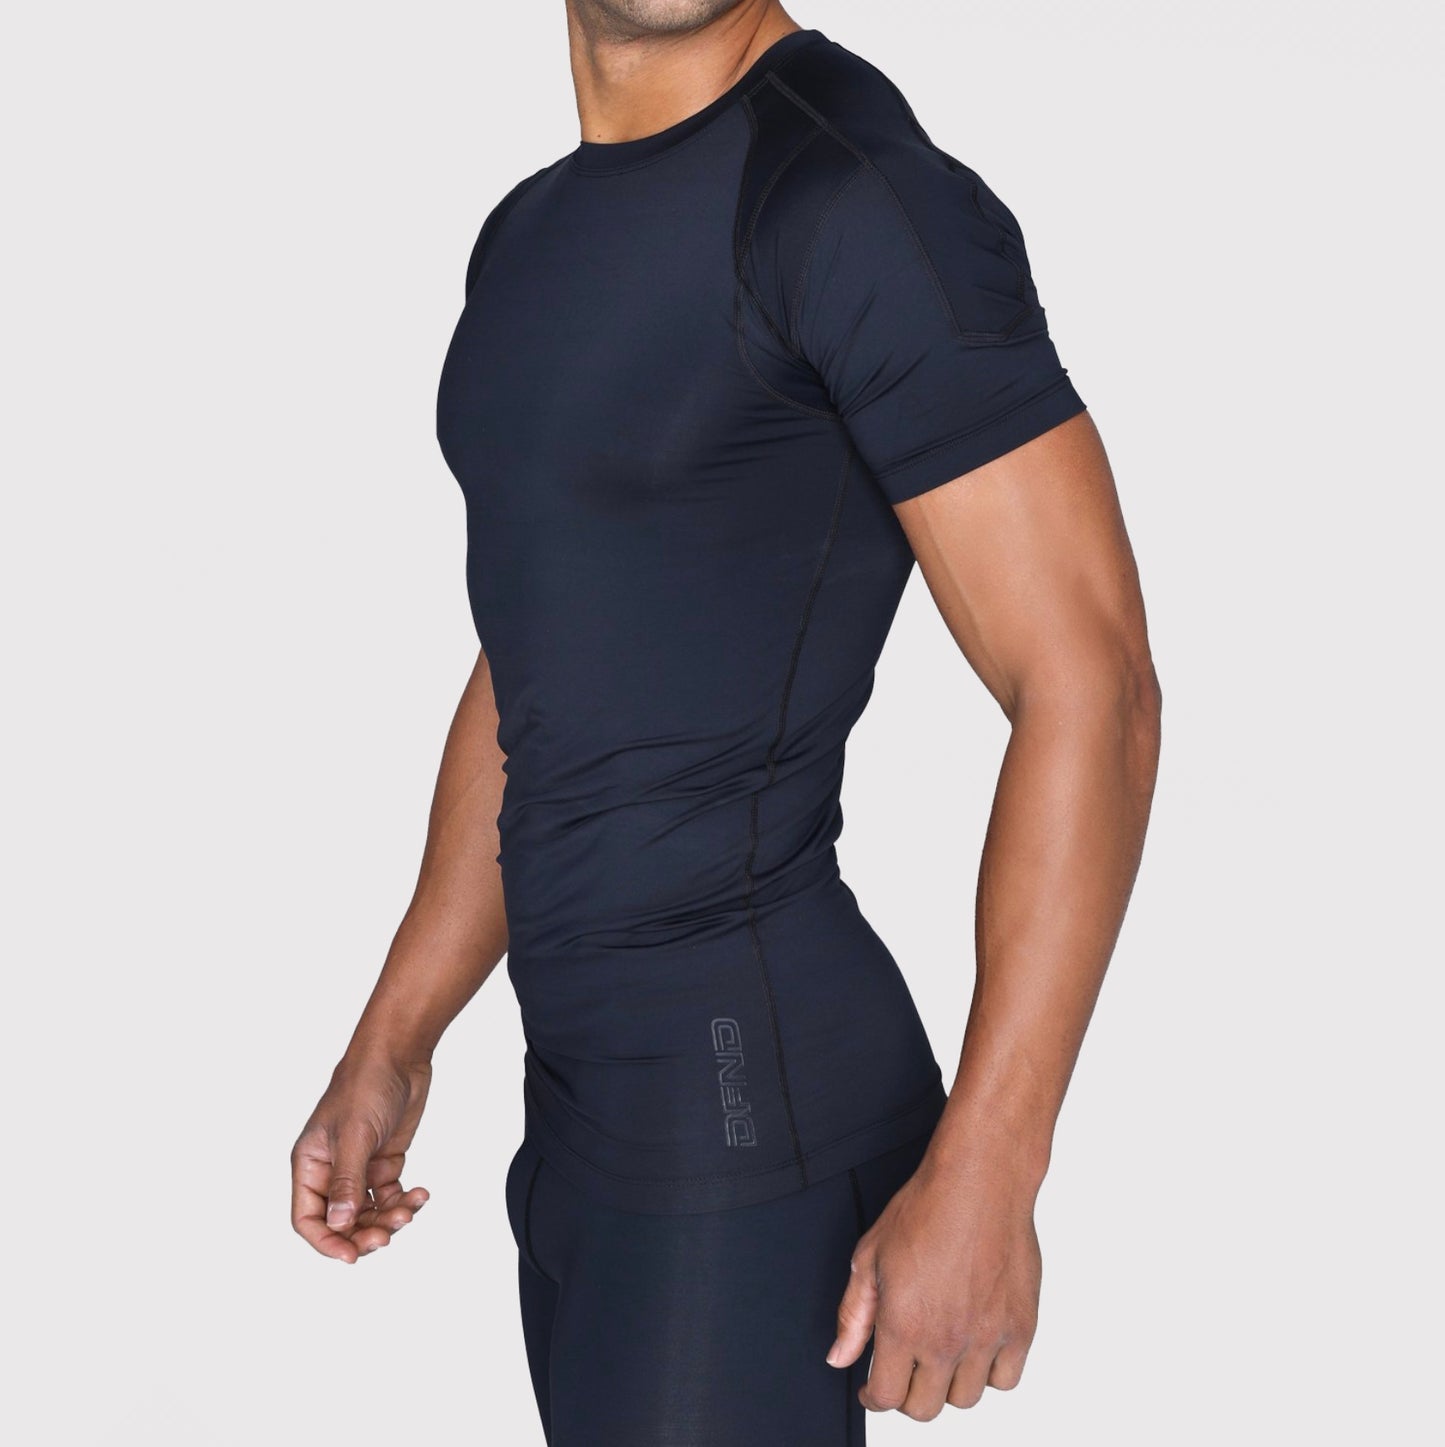 Men's Compression Short Sleeve Shirt Black / S